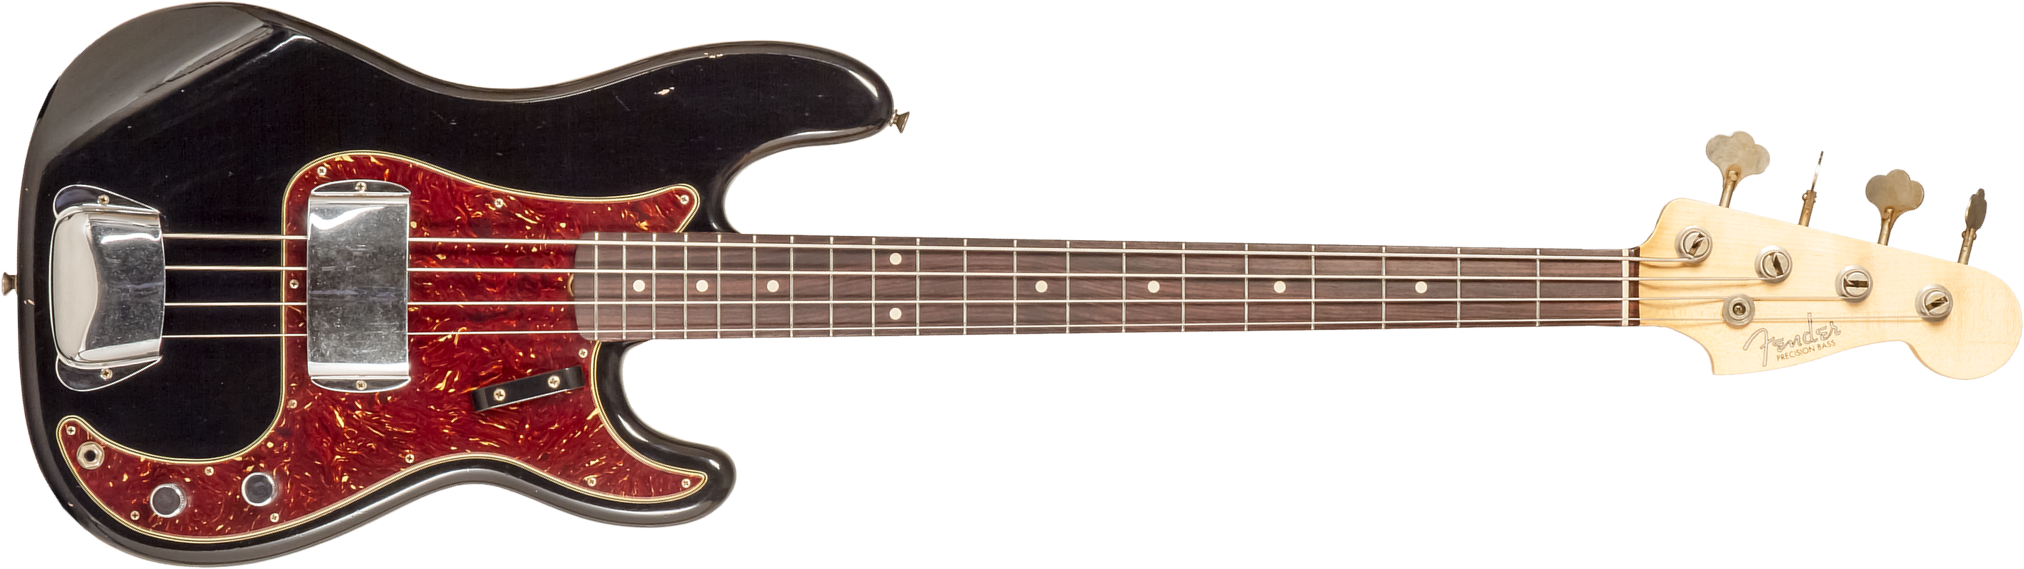 Fender Custom Shop Precision Bass 1962 Rw #r133798 - Journey Man Relic Black - Basse Électrique Solid Body - Main picture